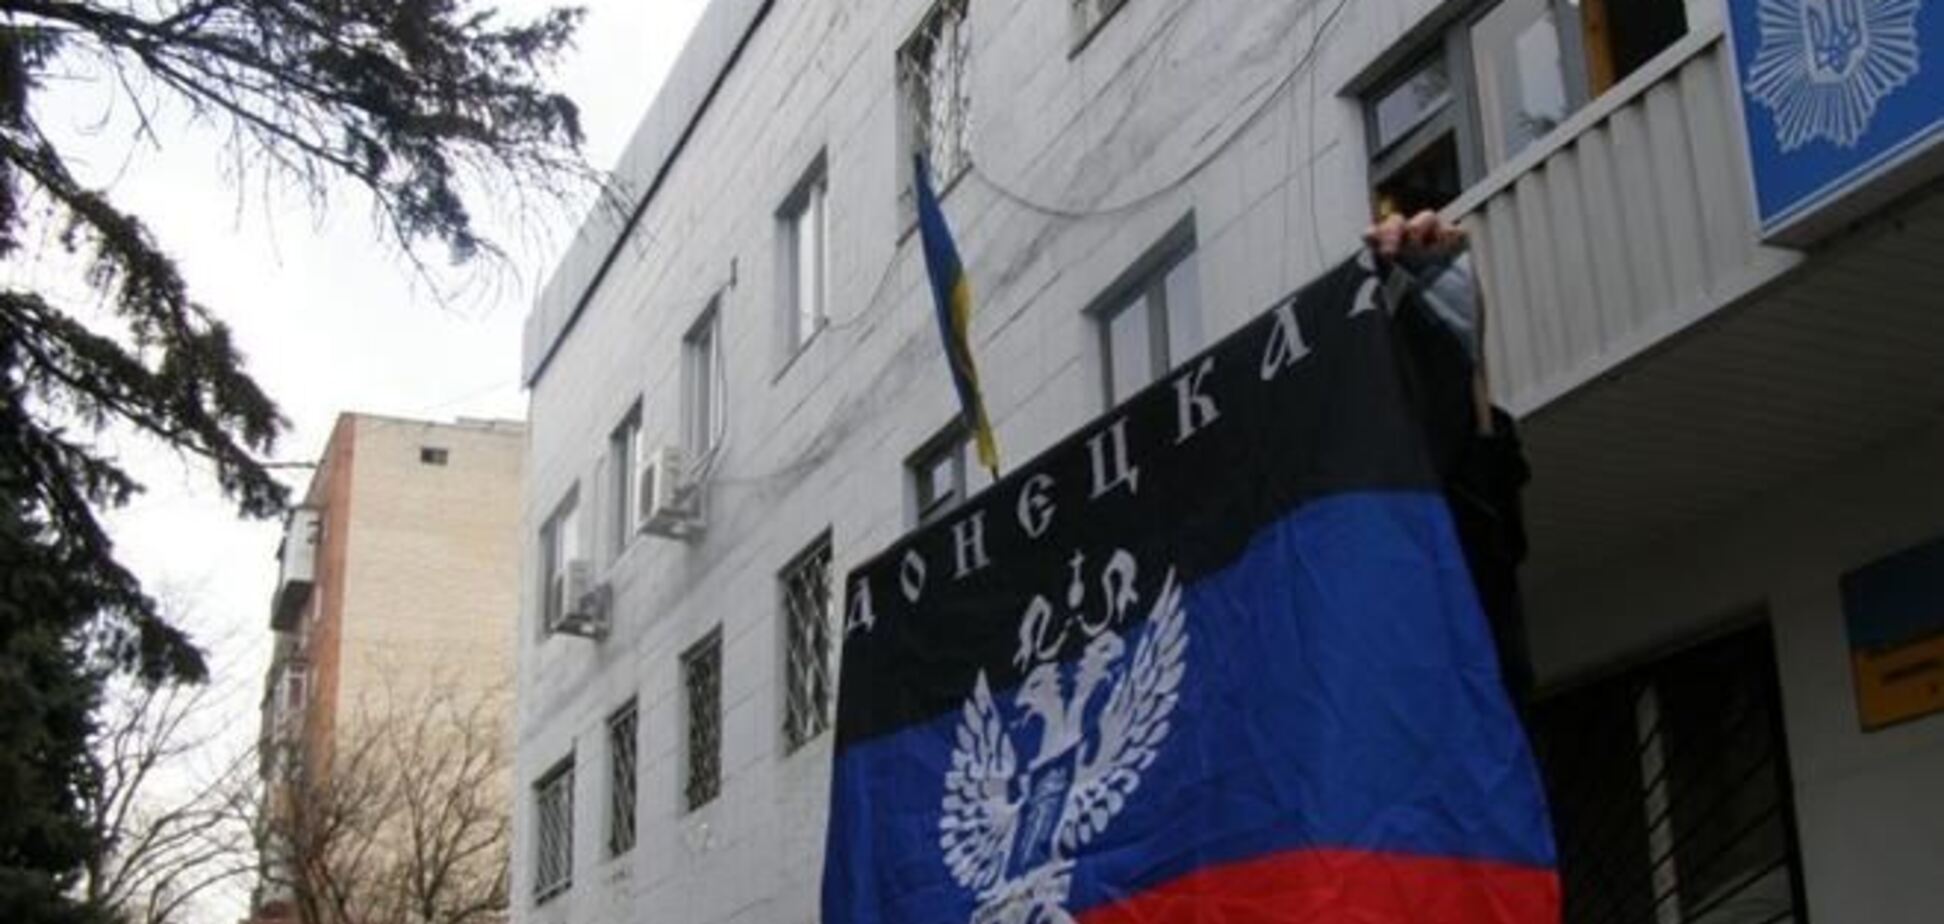 Над горотделом милиции Красноармейска вывесили флаг 'Донецкой республики'